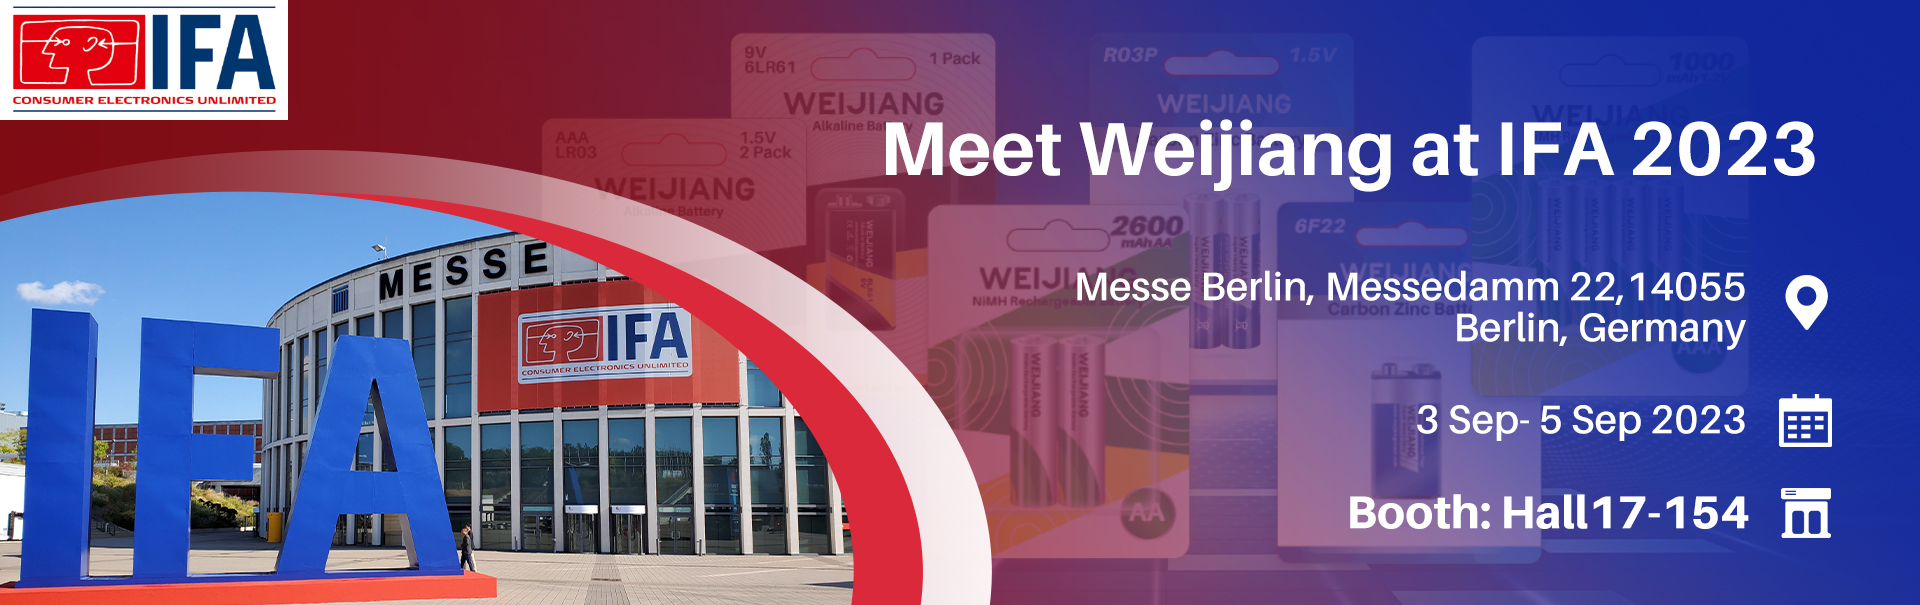 IFA 2023 | Meet Weijiang in IFA 2023, Berlin | WEIJIANG